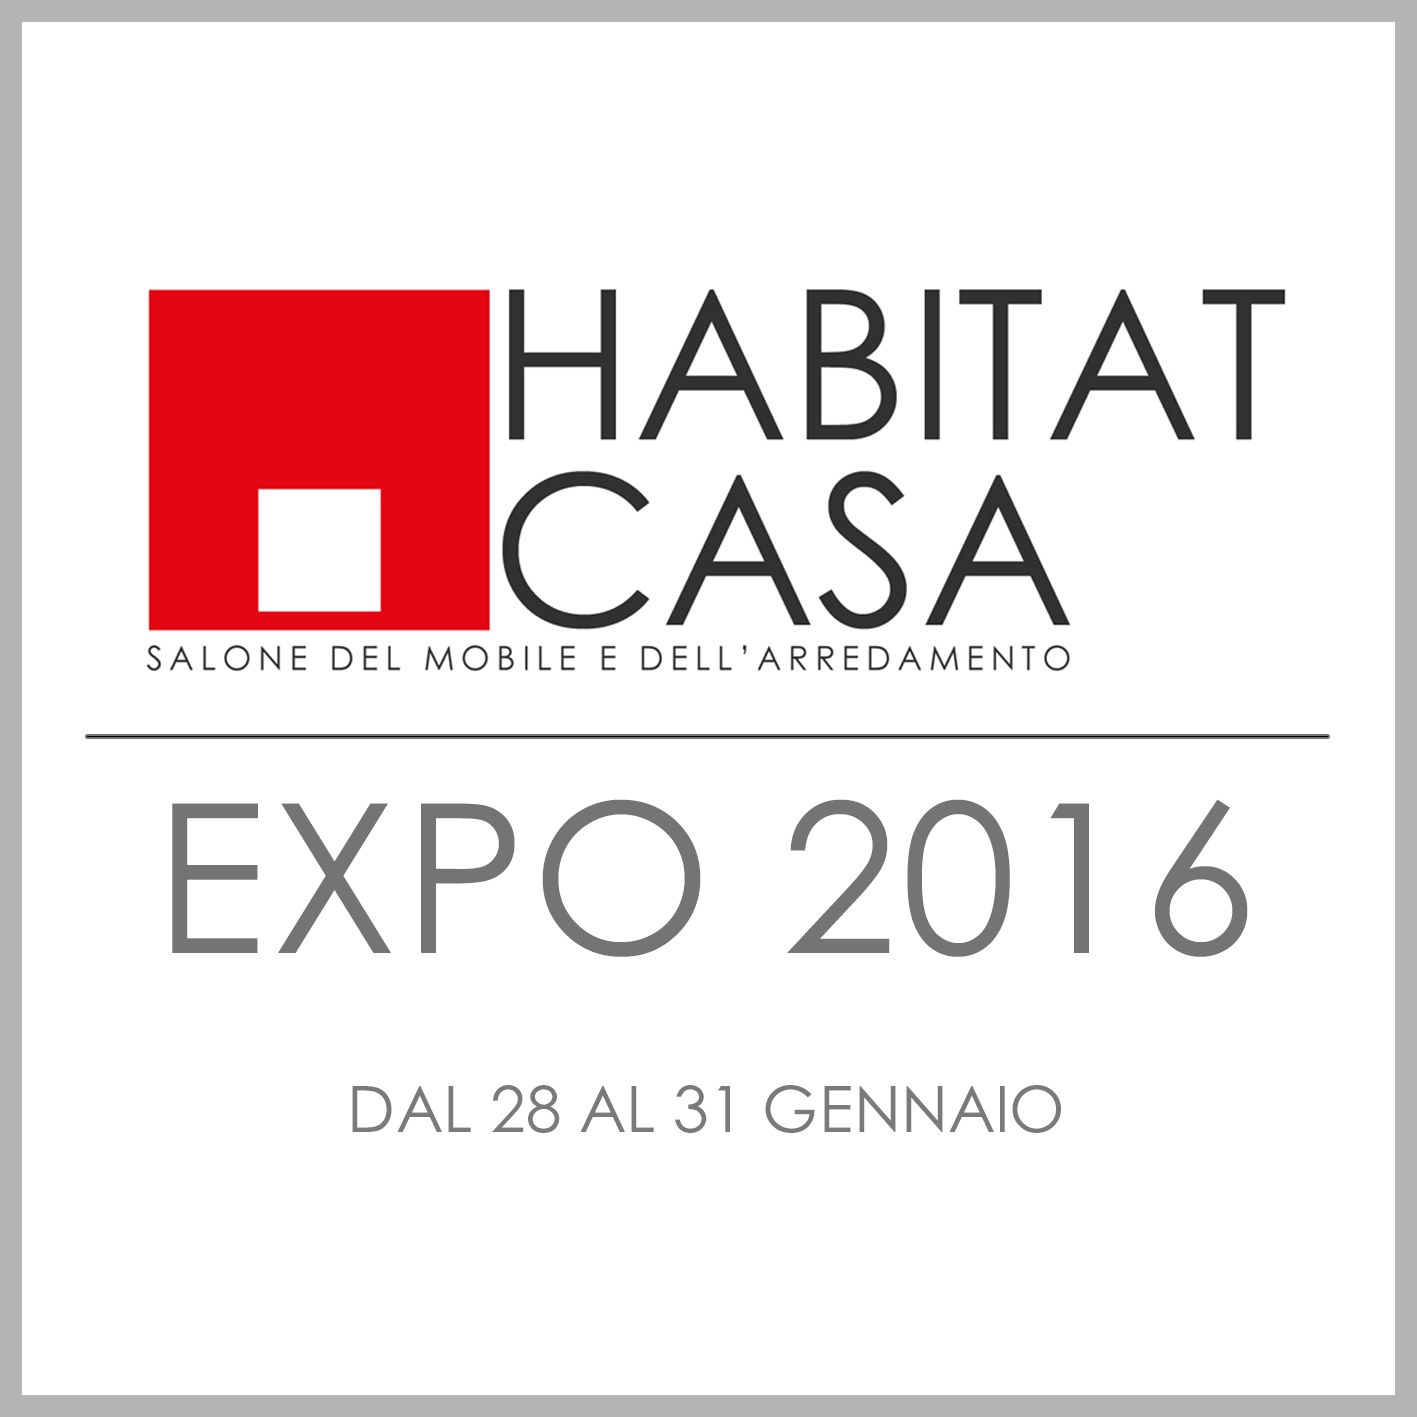 HABITAT CASA EXPO 2017